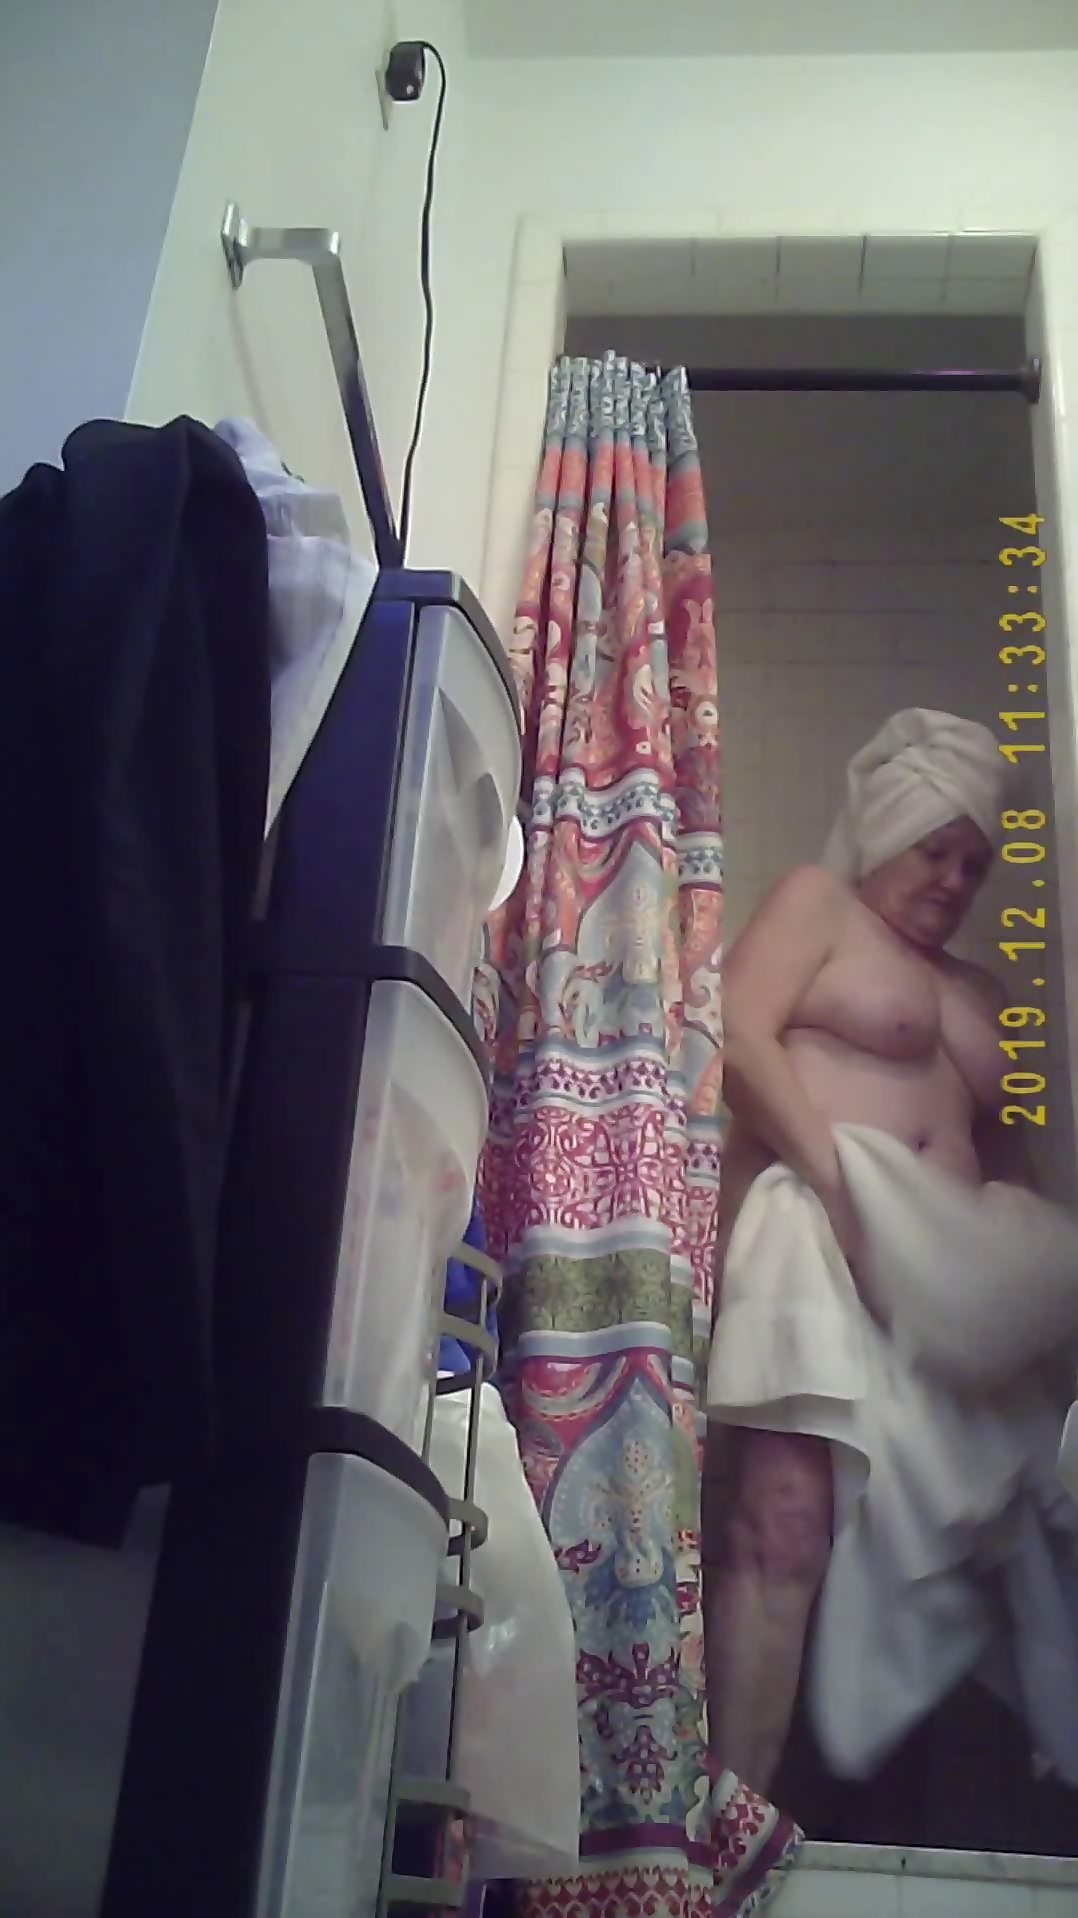 peeping tom on naked grandma